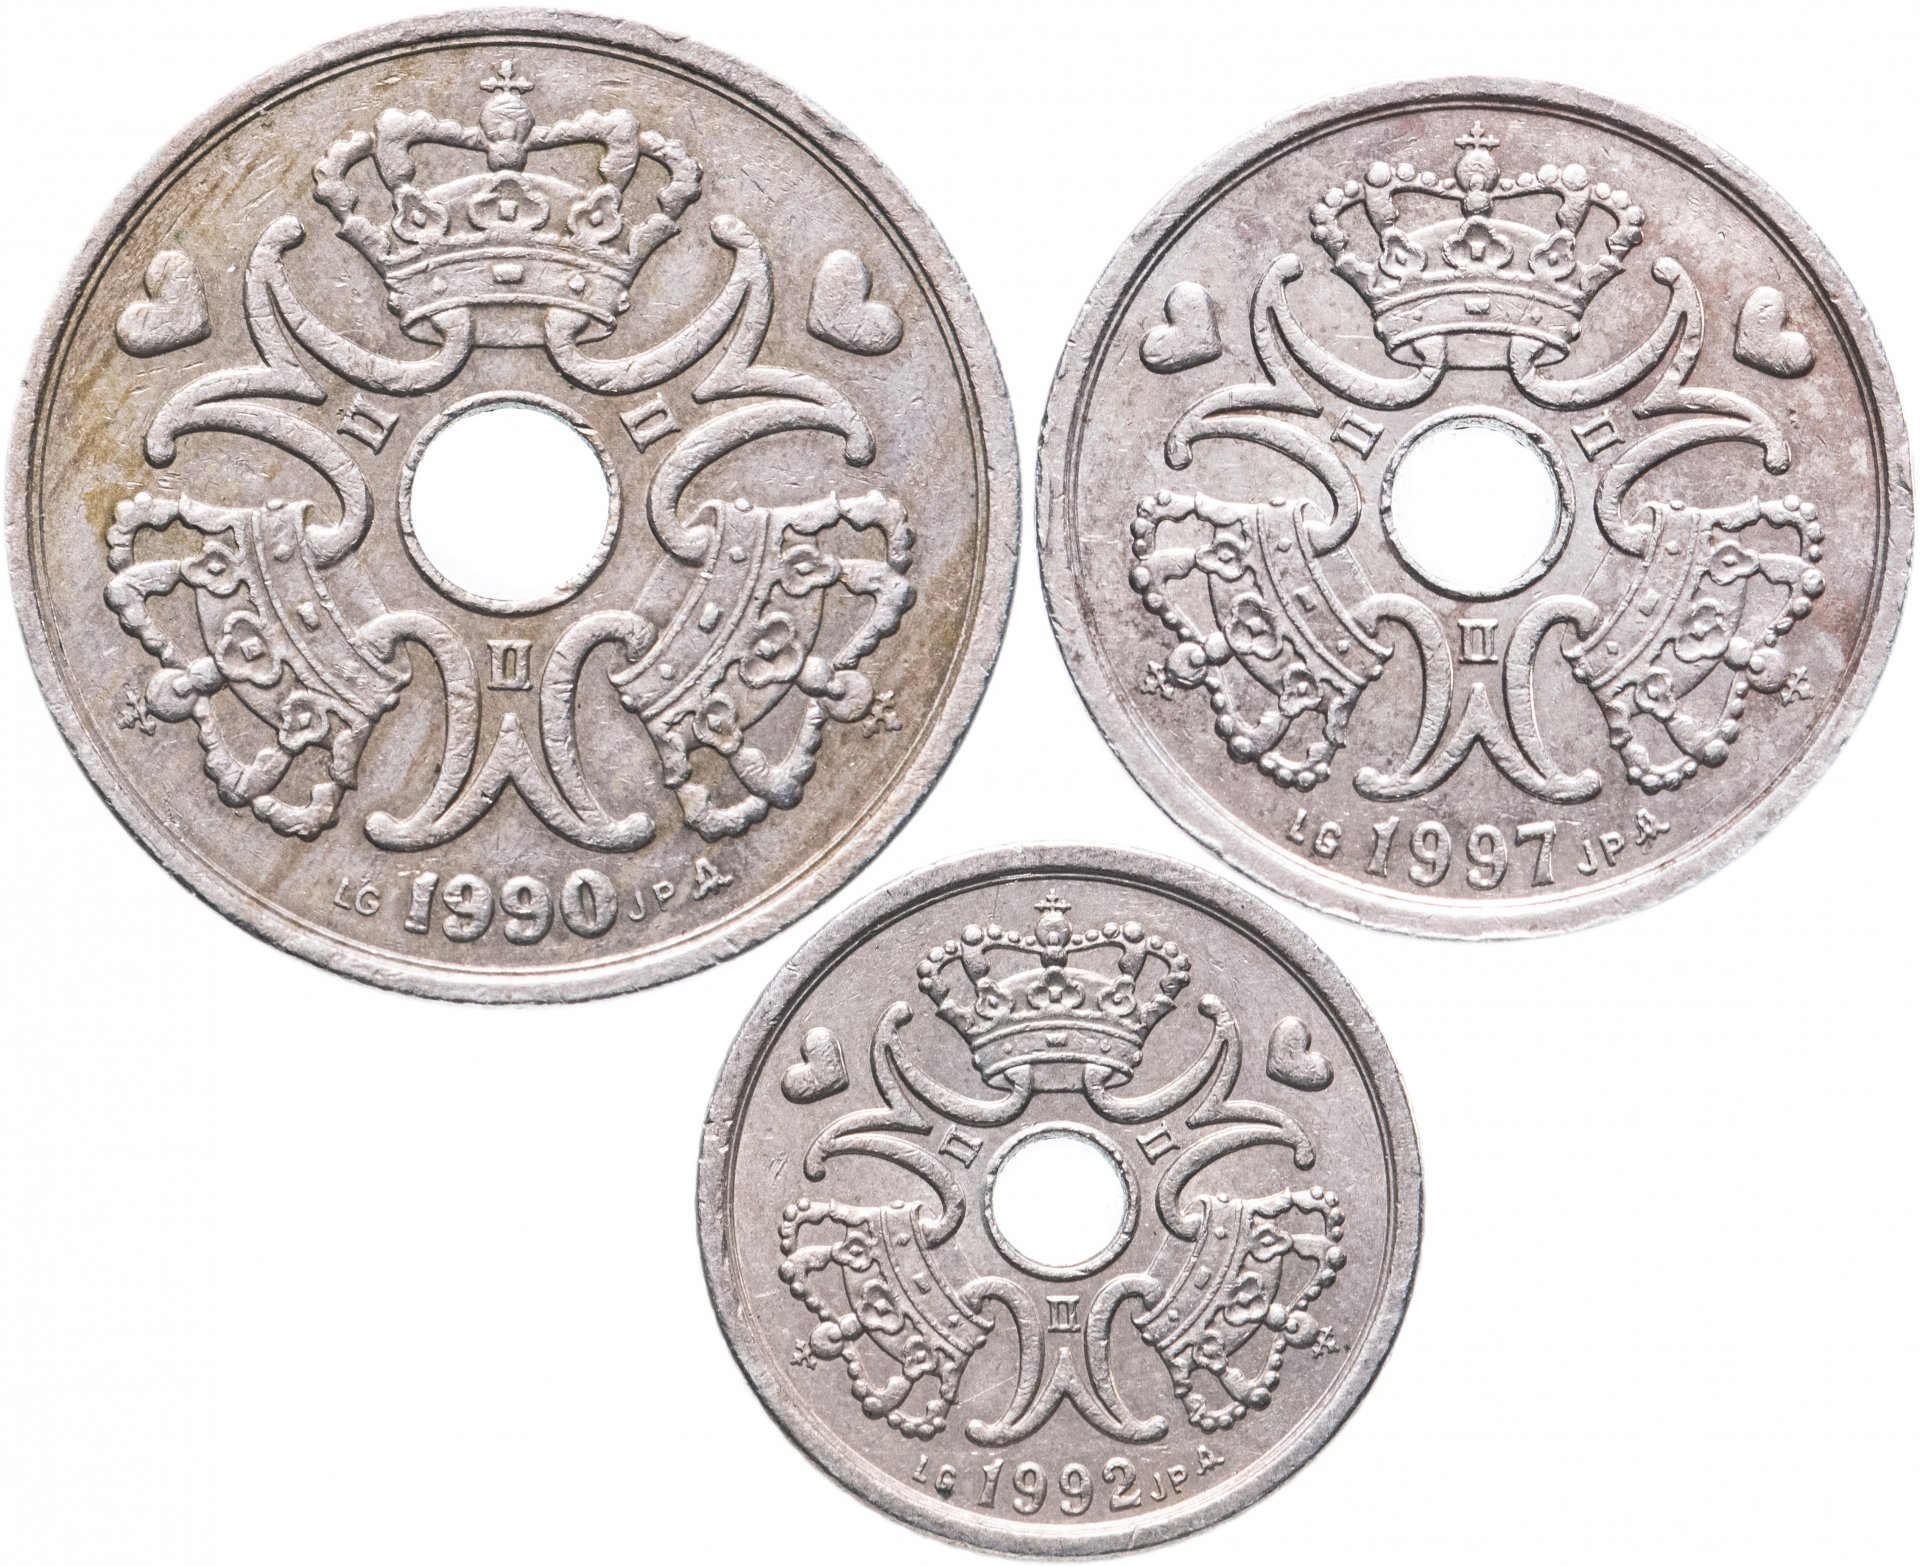 Стоимость монет 1990 года. Монета Denmark jegova. Монета Дании nimantkan.